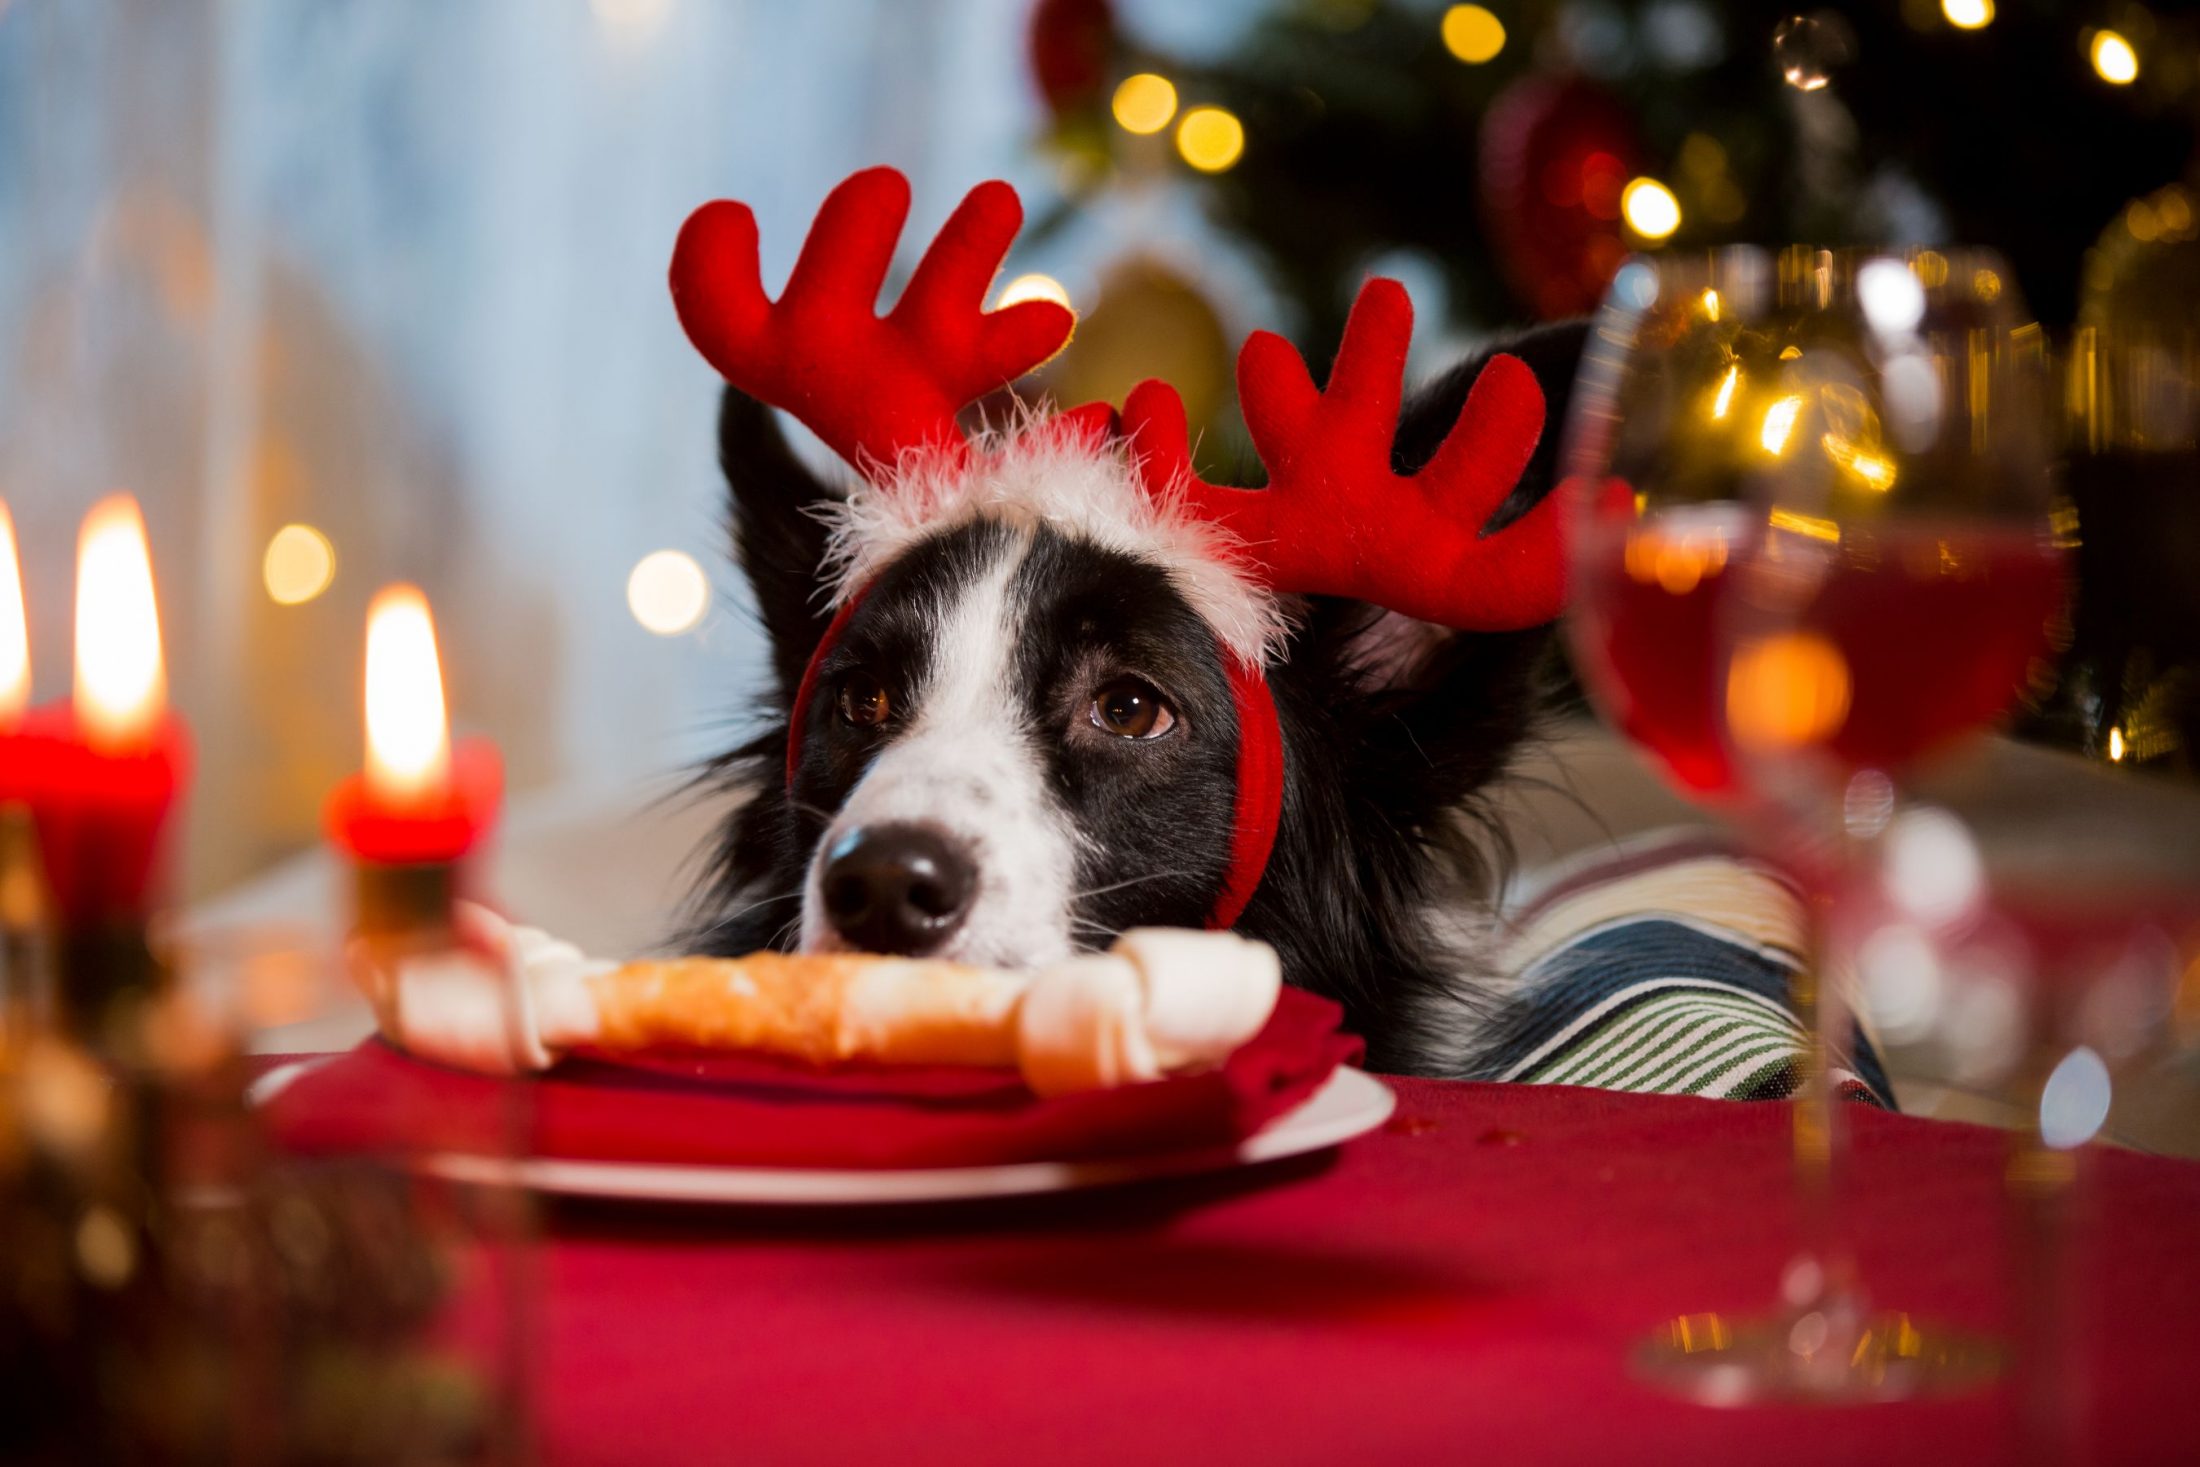 Dog eating holiday bone.